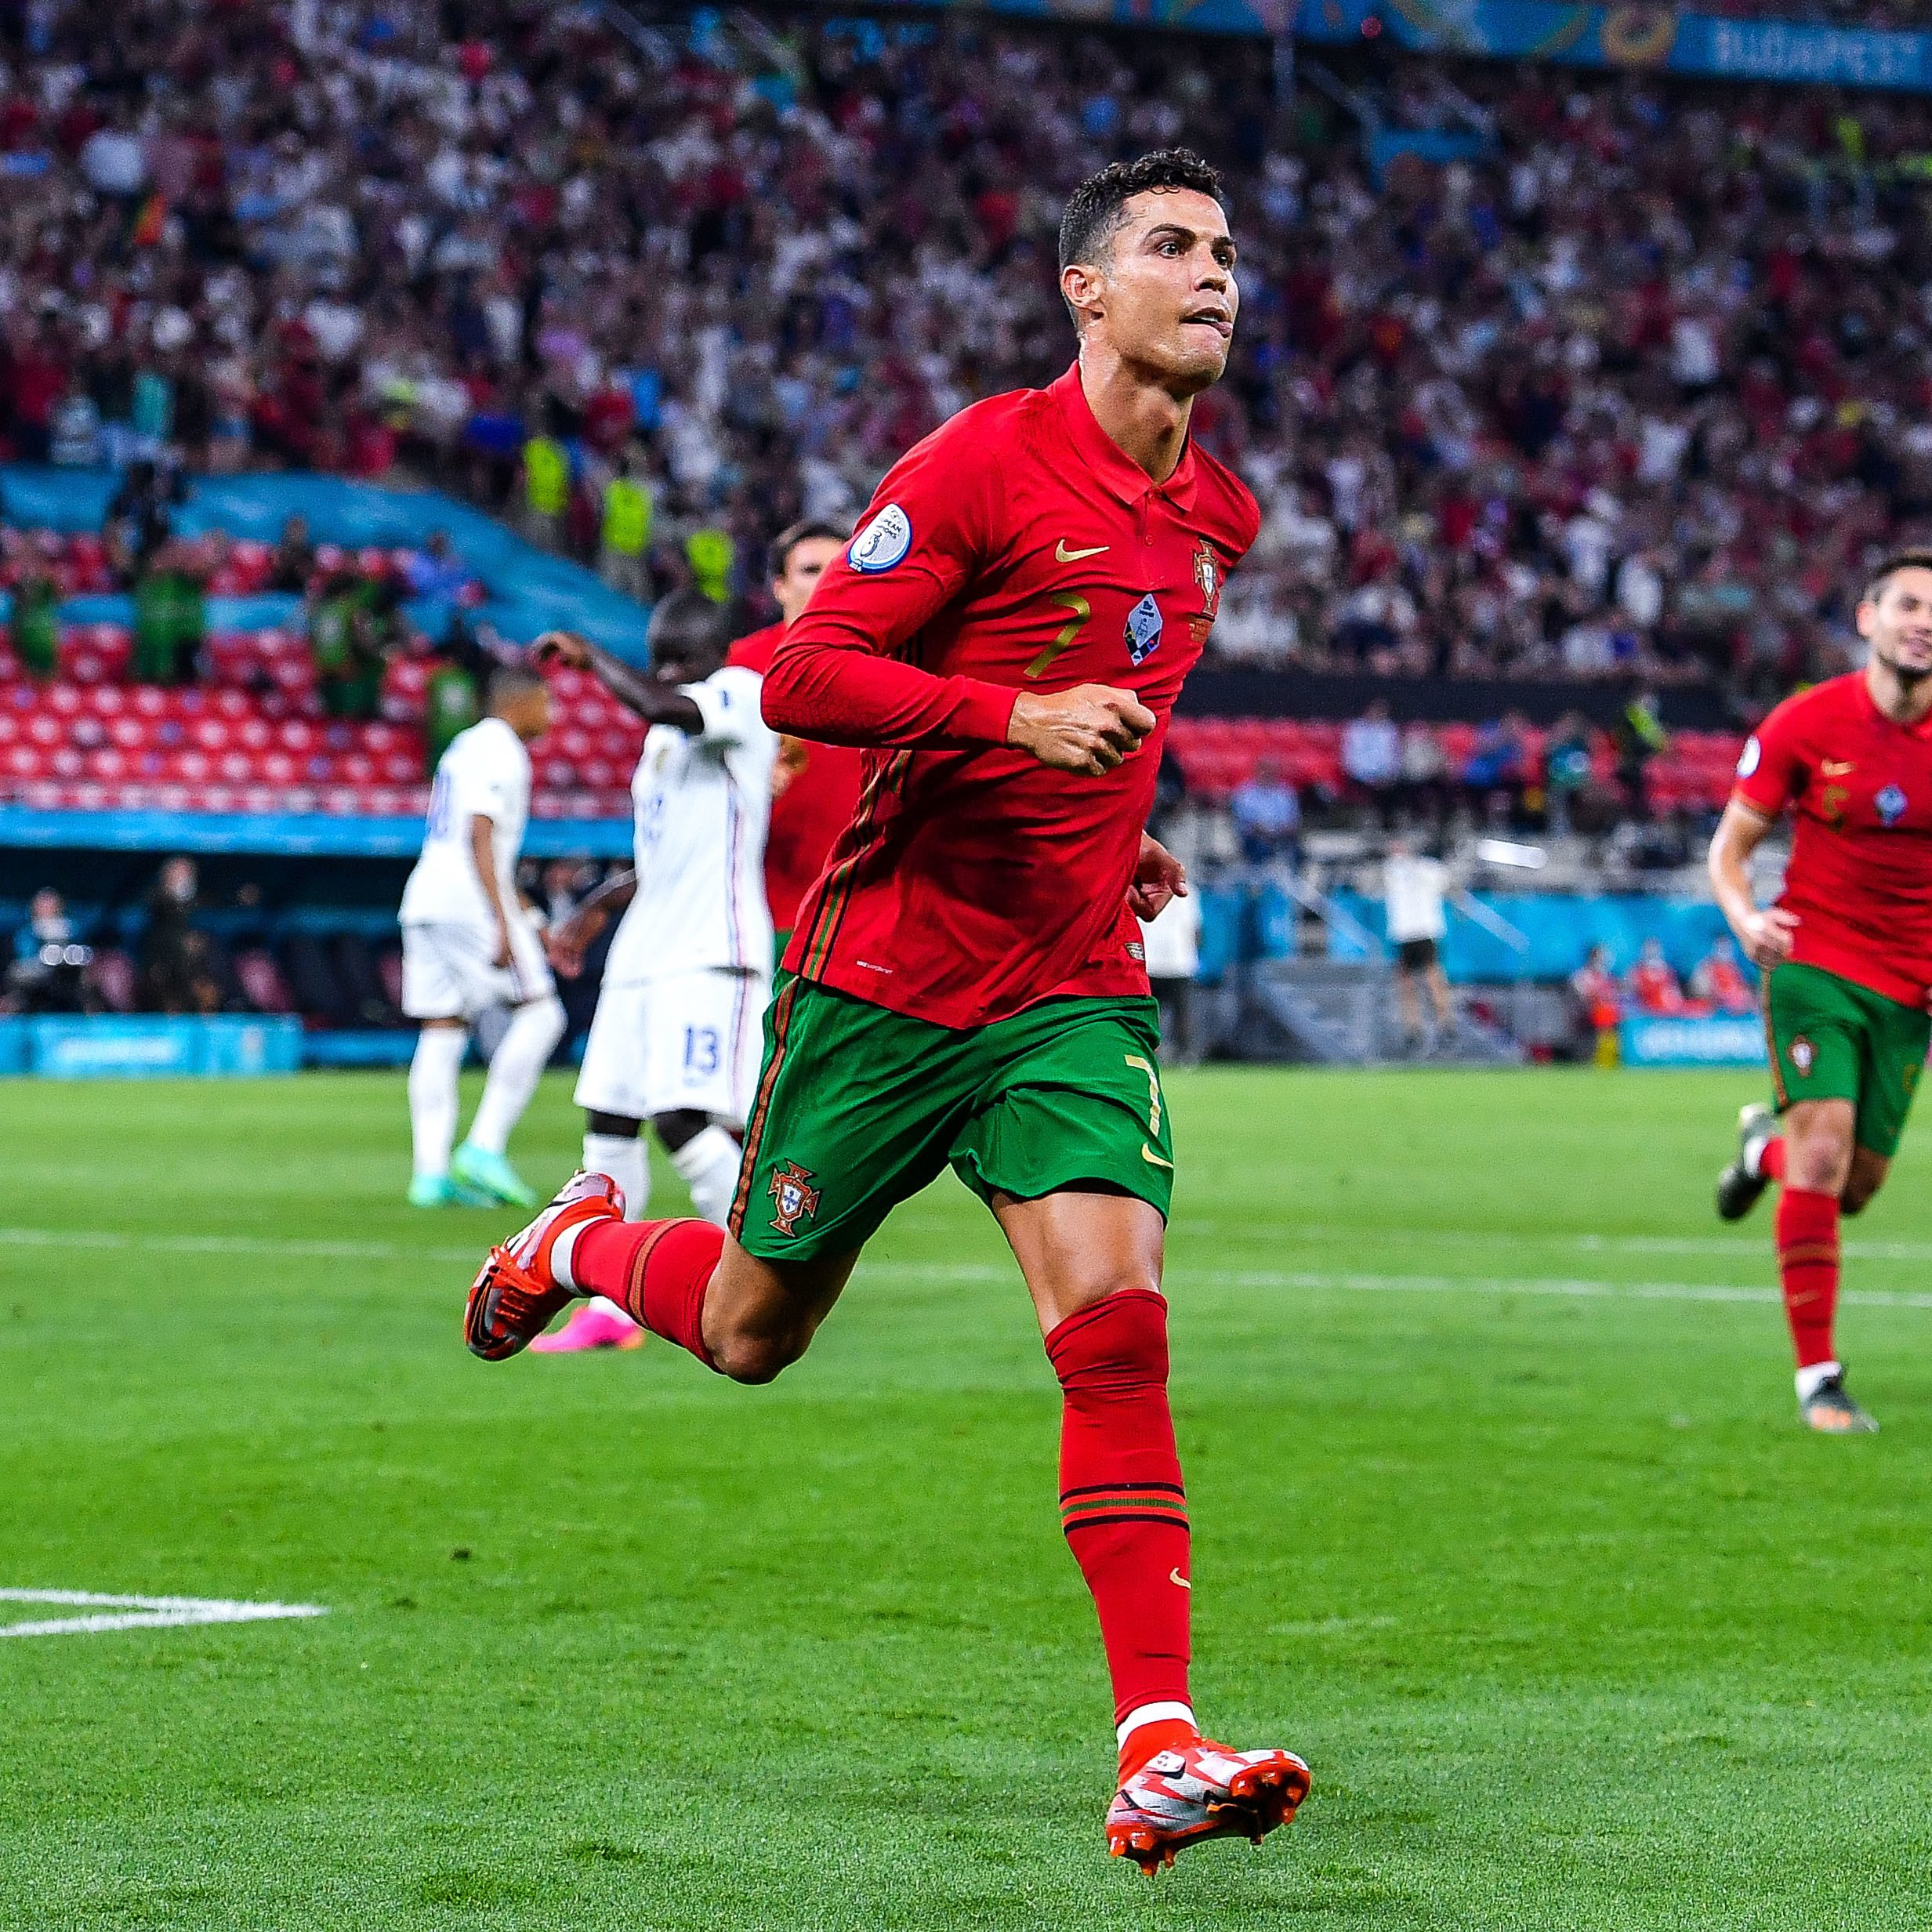 Tuyển Bồ Đào Nha vs Ireland: Sự kết hợp hoàn hảo giữa Ronaldo, Bernardo Silva và đội hình Bồ Đào Nha sẽ làm khó cho đối thủ Ireland. Hãy cùng chờ đón trận đấu đầy kịch tính và hấp dẫn này.